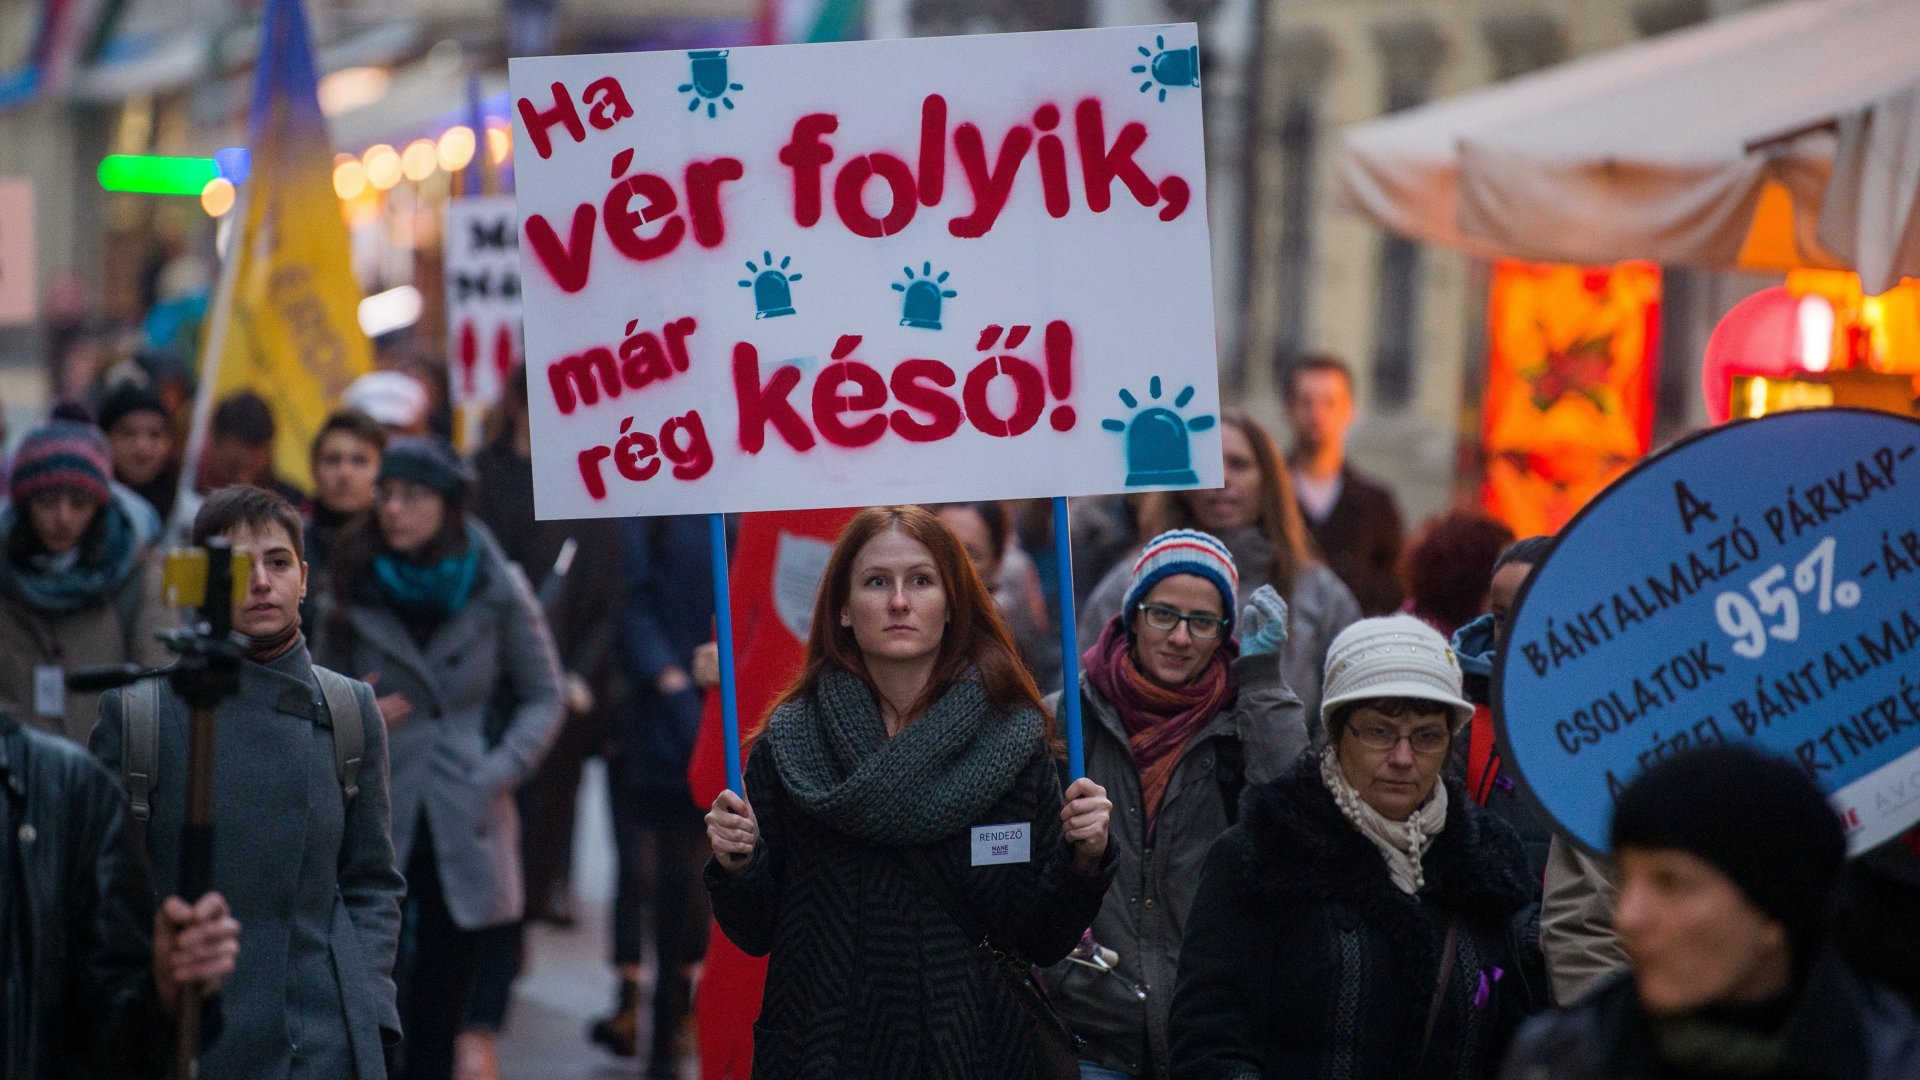 Résztvevõk a Nõkért Együtt az Erõszak Ellen Egyesület (NANE) Néma Tanúk elnevezésû felvonulásán az V. kerületi Papnevelde utcában, amelyet a nõk elleni erõszak felszámolásának nemzetközi világnapja alkalmából tartottak Budapesten 2018. november 25-én